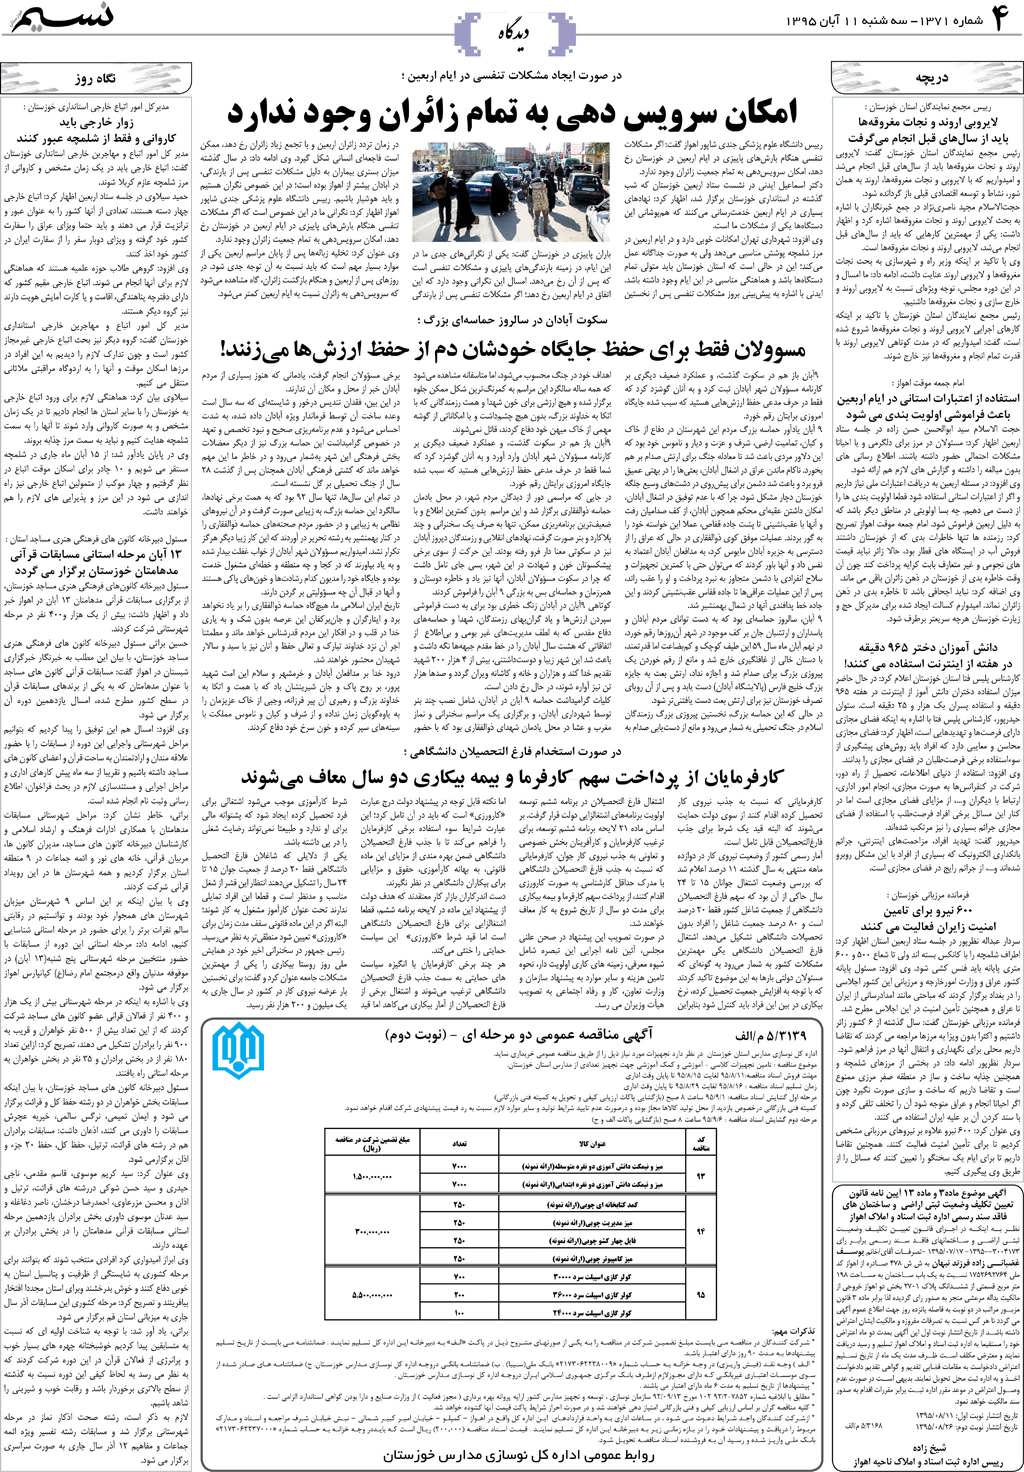 صفحه دیدگاه روزنامه نسیم شماره 1371